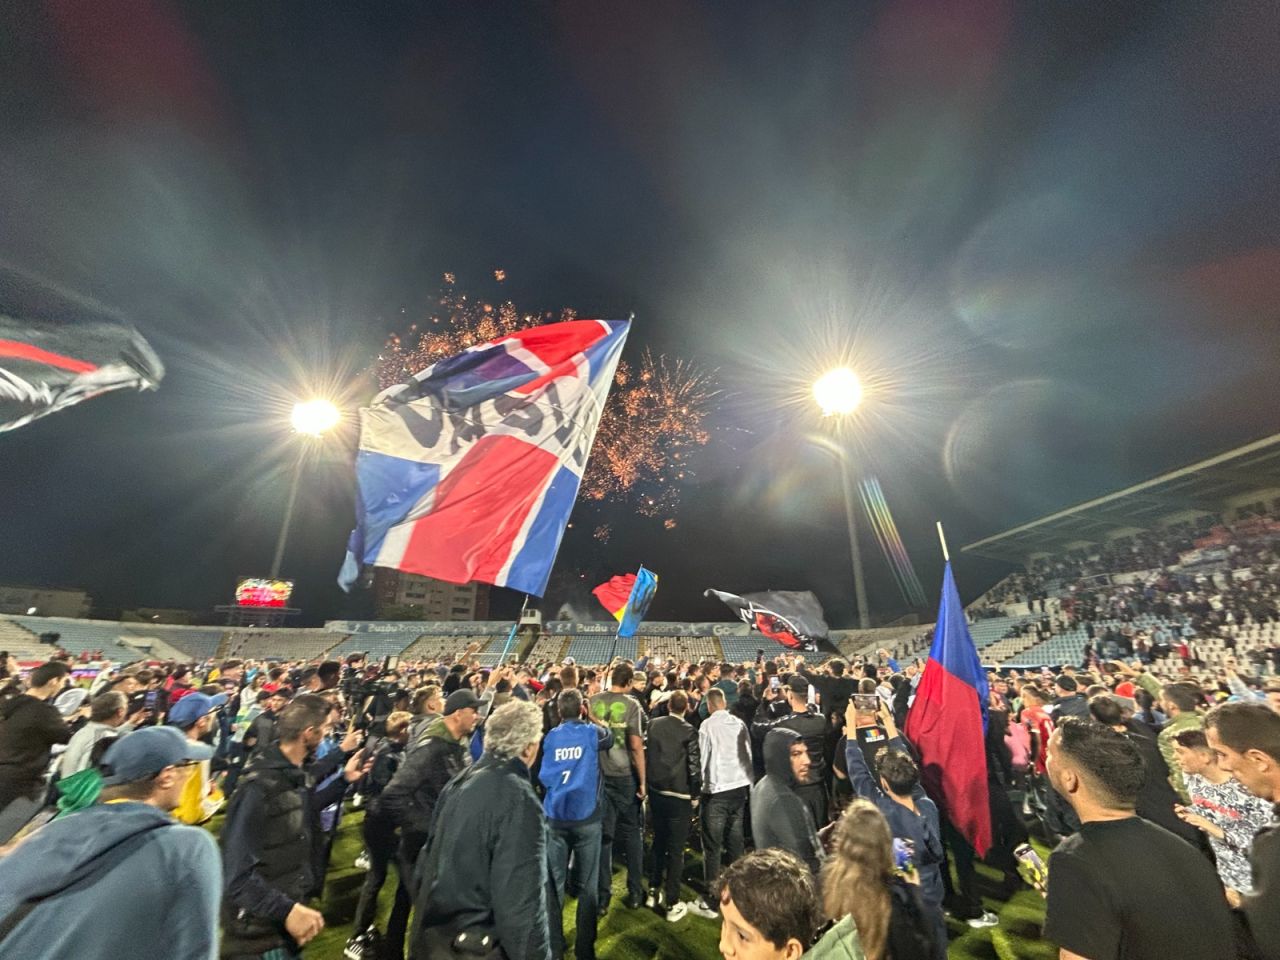 Sărbătoare la Buzău! Fotbaliștii s-au bucurat alături de fani în urma promovării istorice. Vali Dumitrache: ”Am muncit un an pentru asta”_9